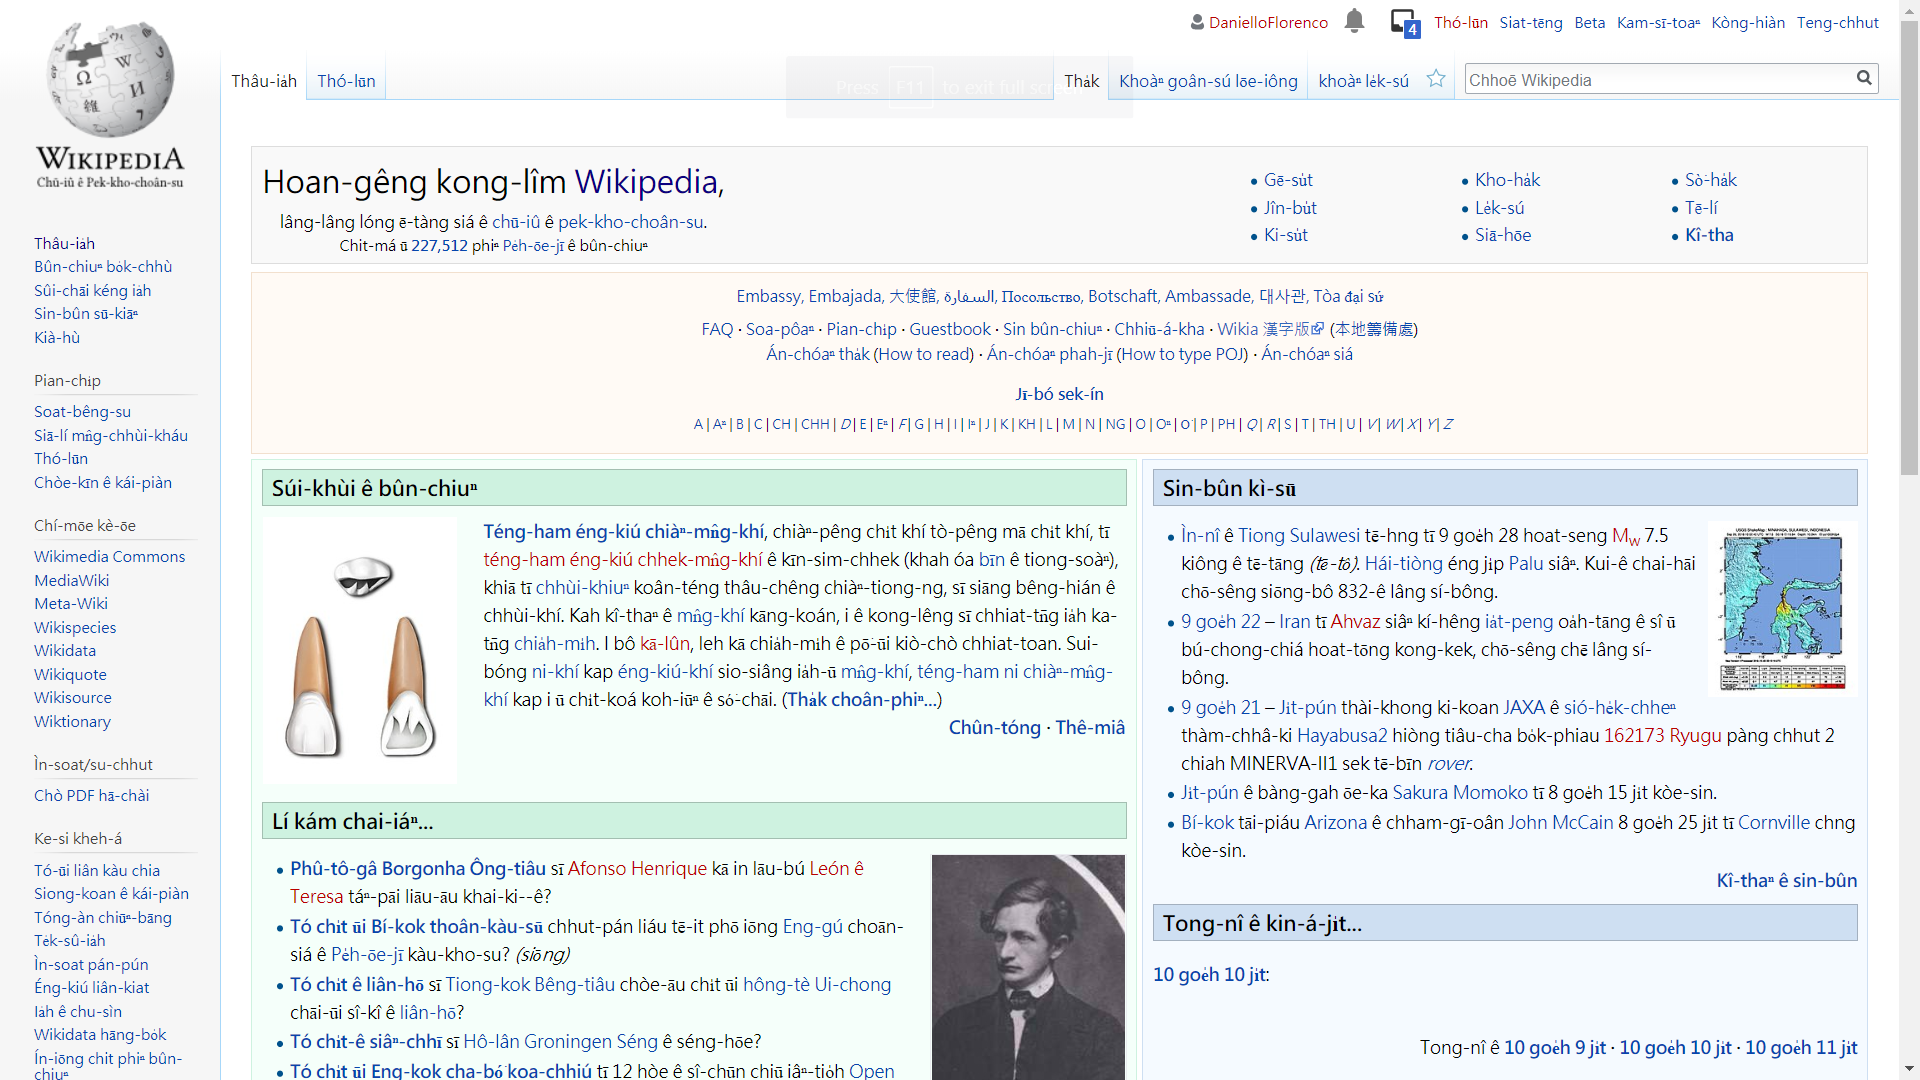 Zh-min-nan wikipedia screenshot.png